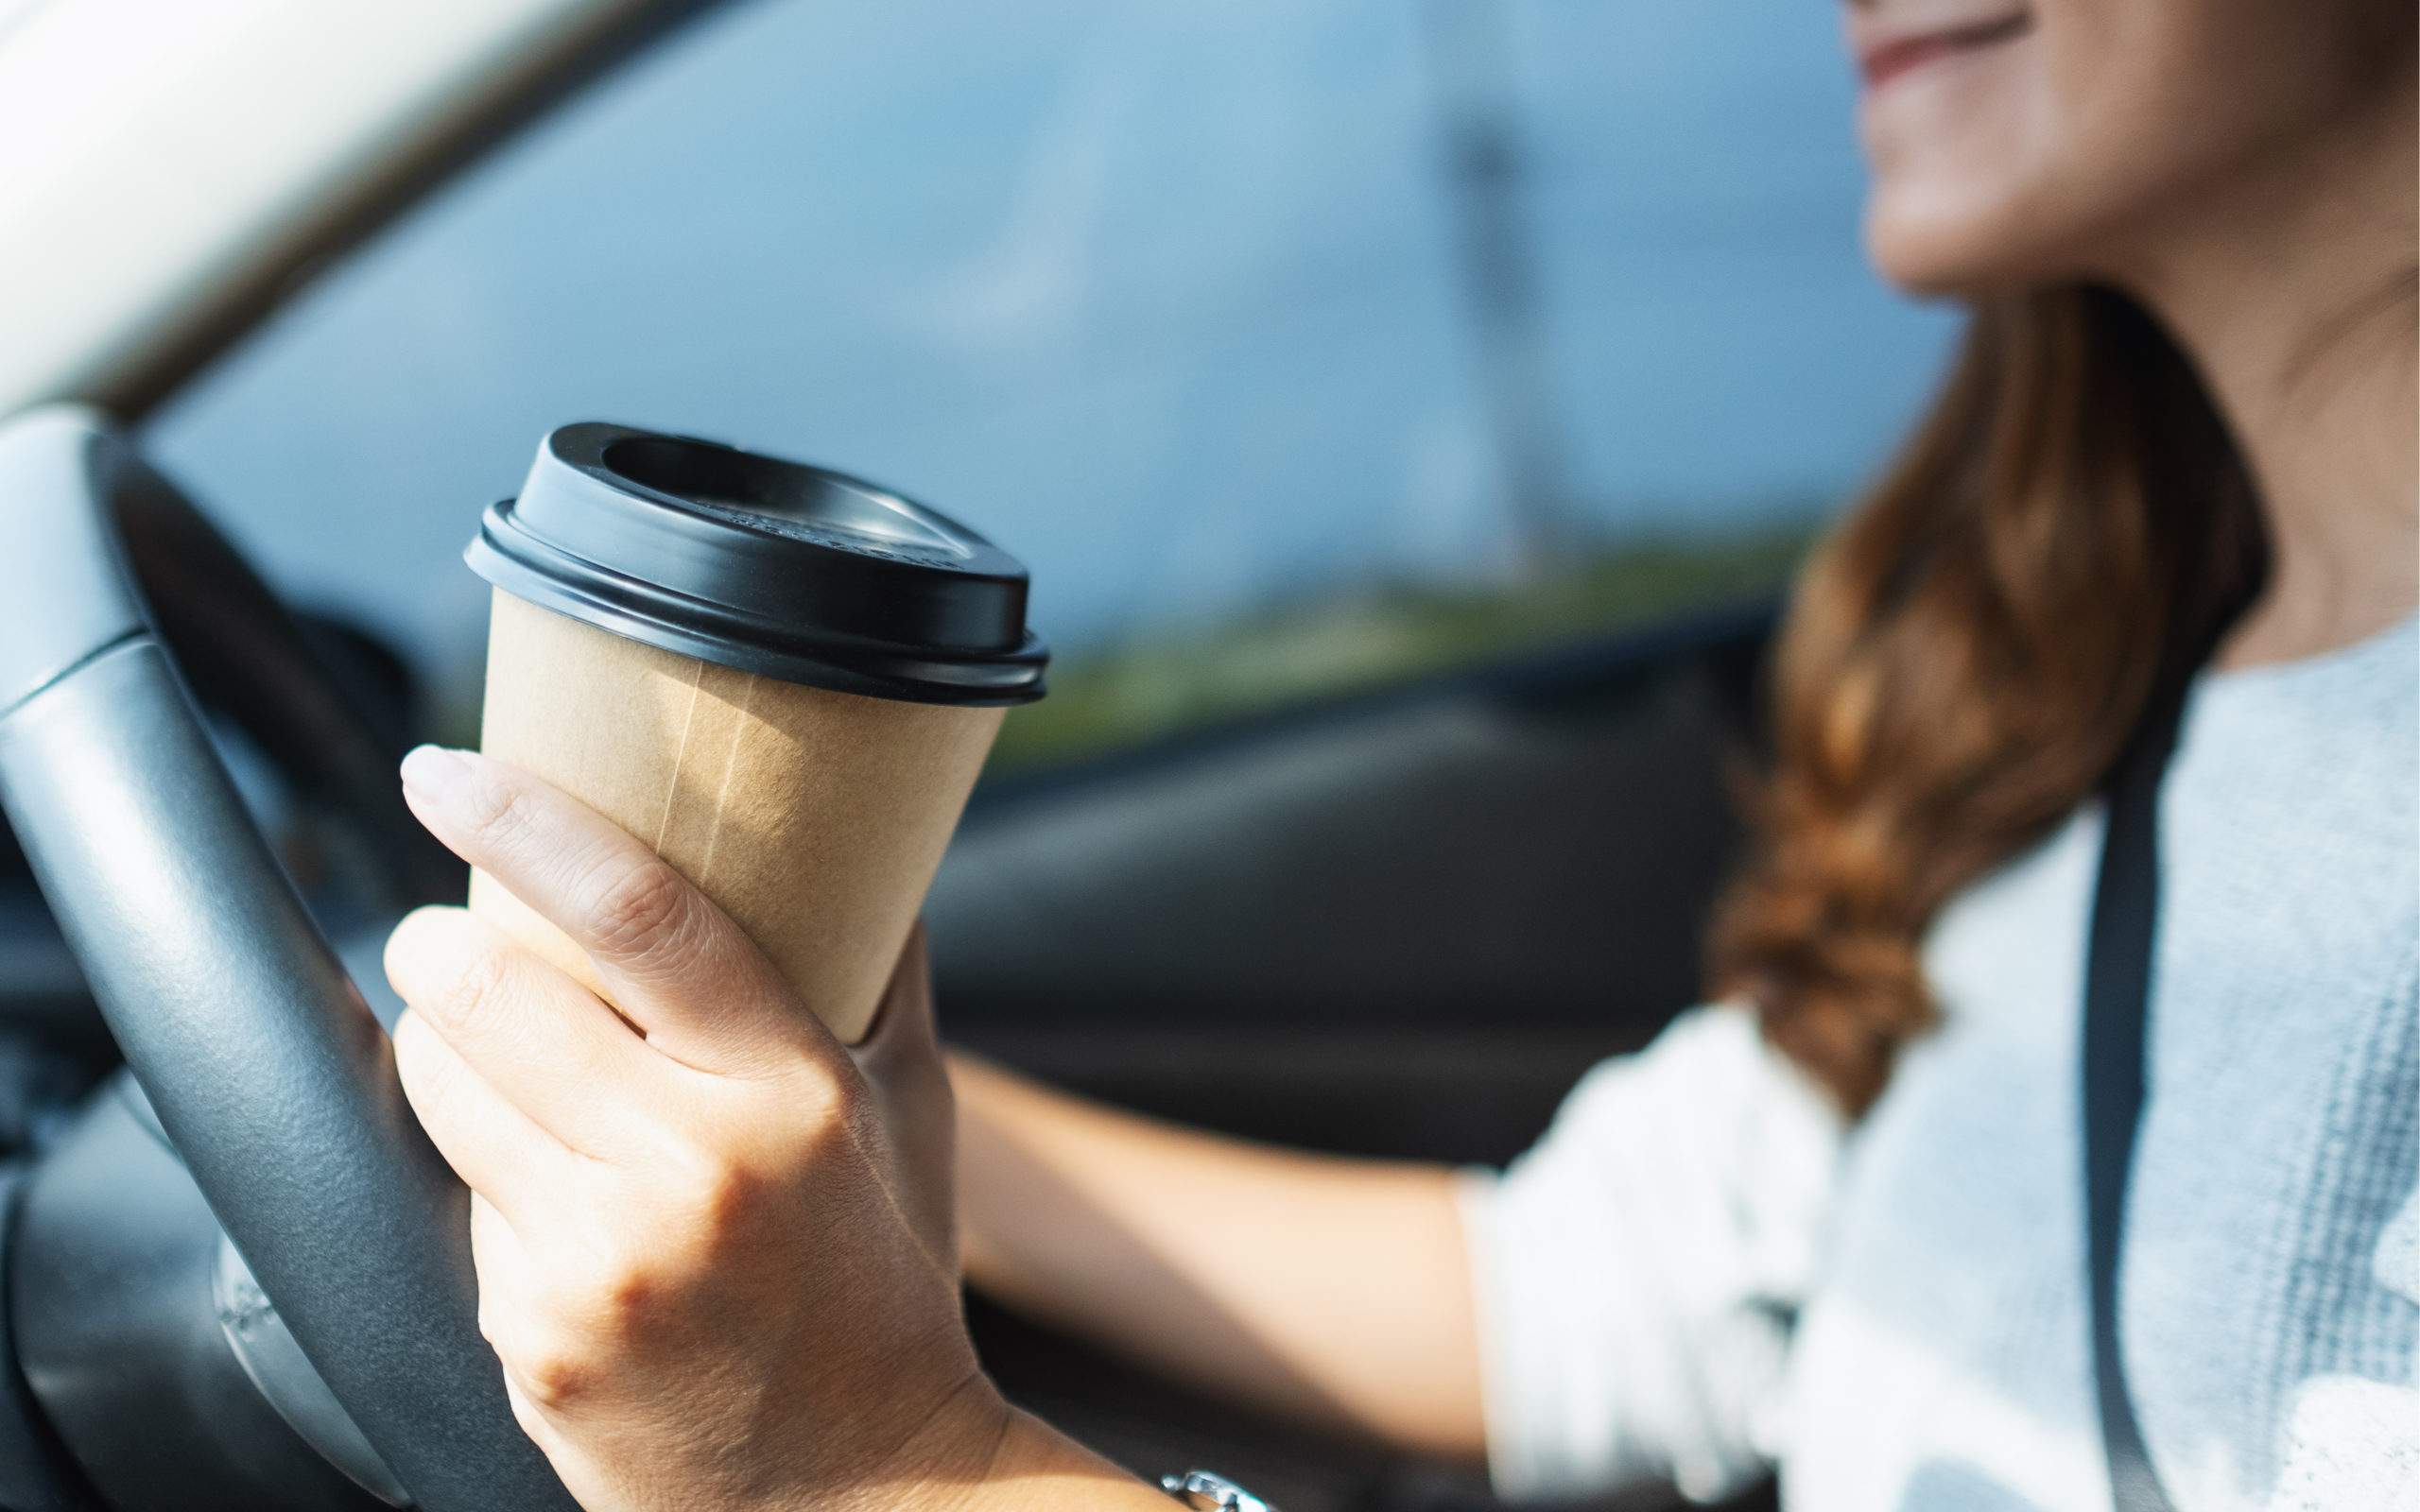 Le café est un excellent allié contre la somnolence au volant explique la science !